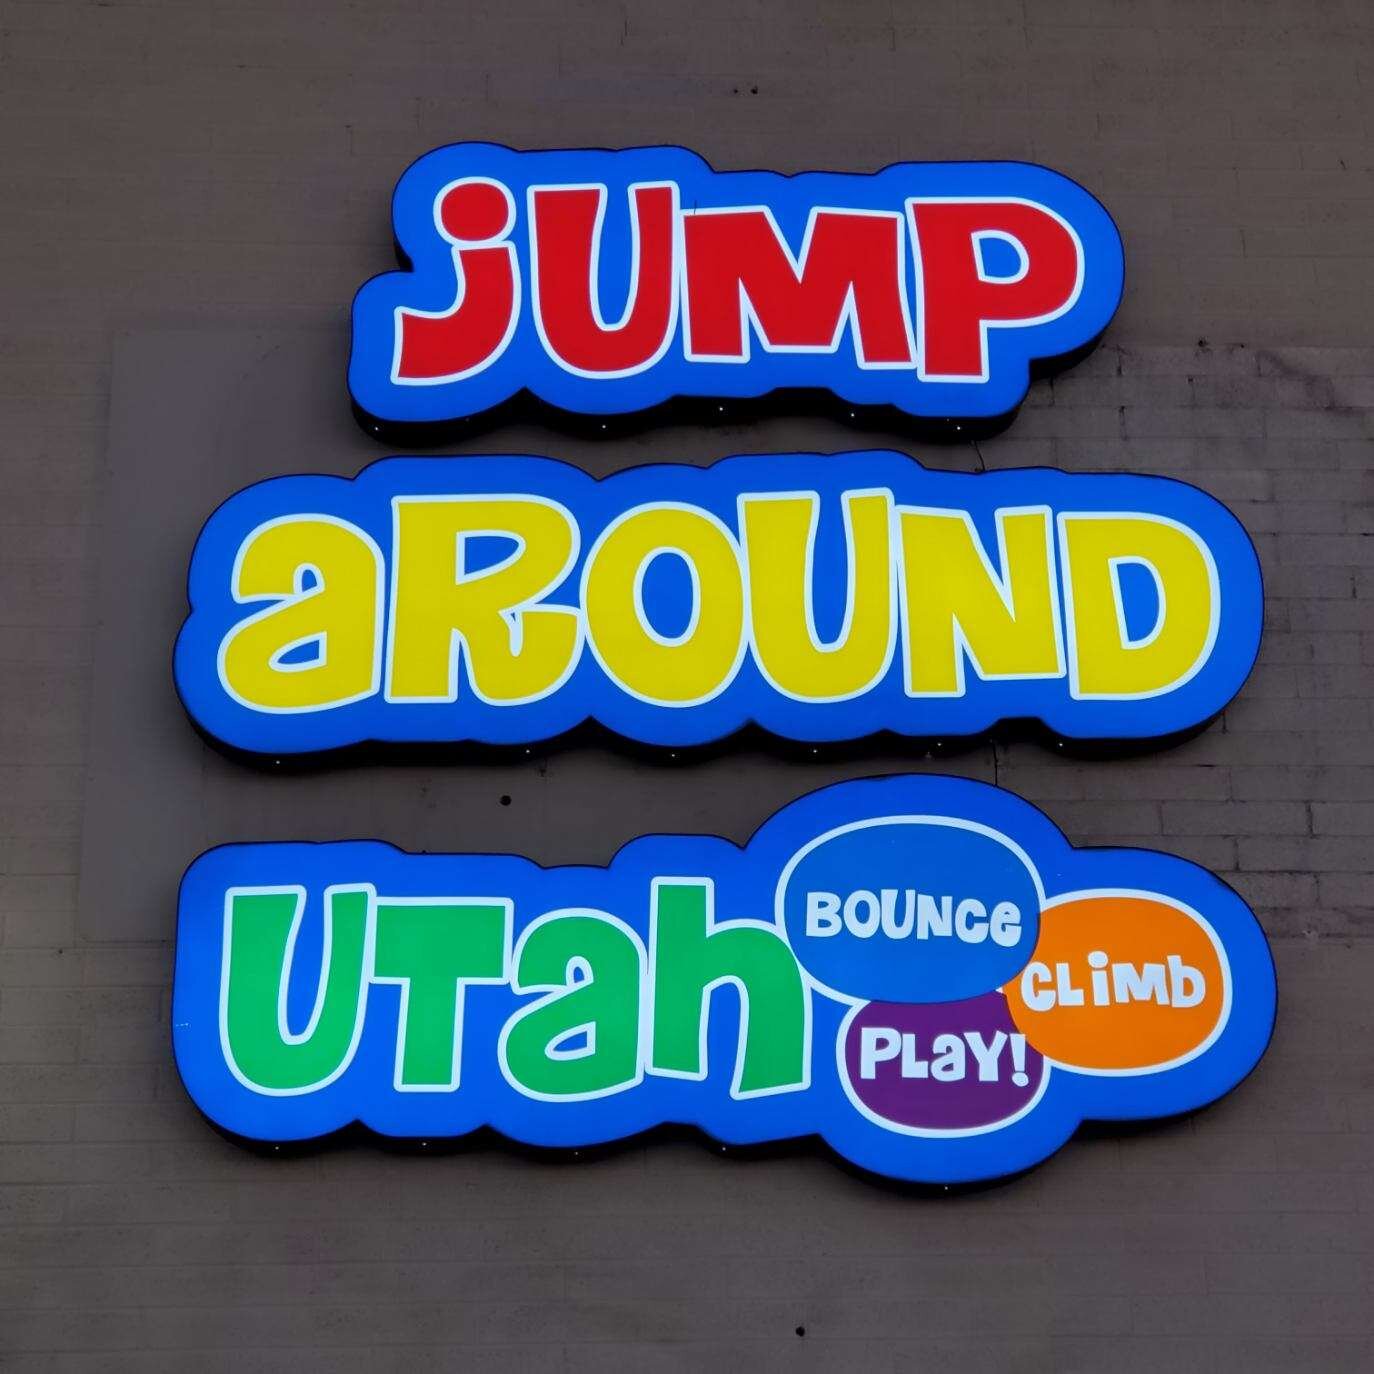 Jump Around Utah